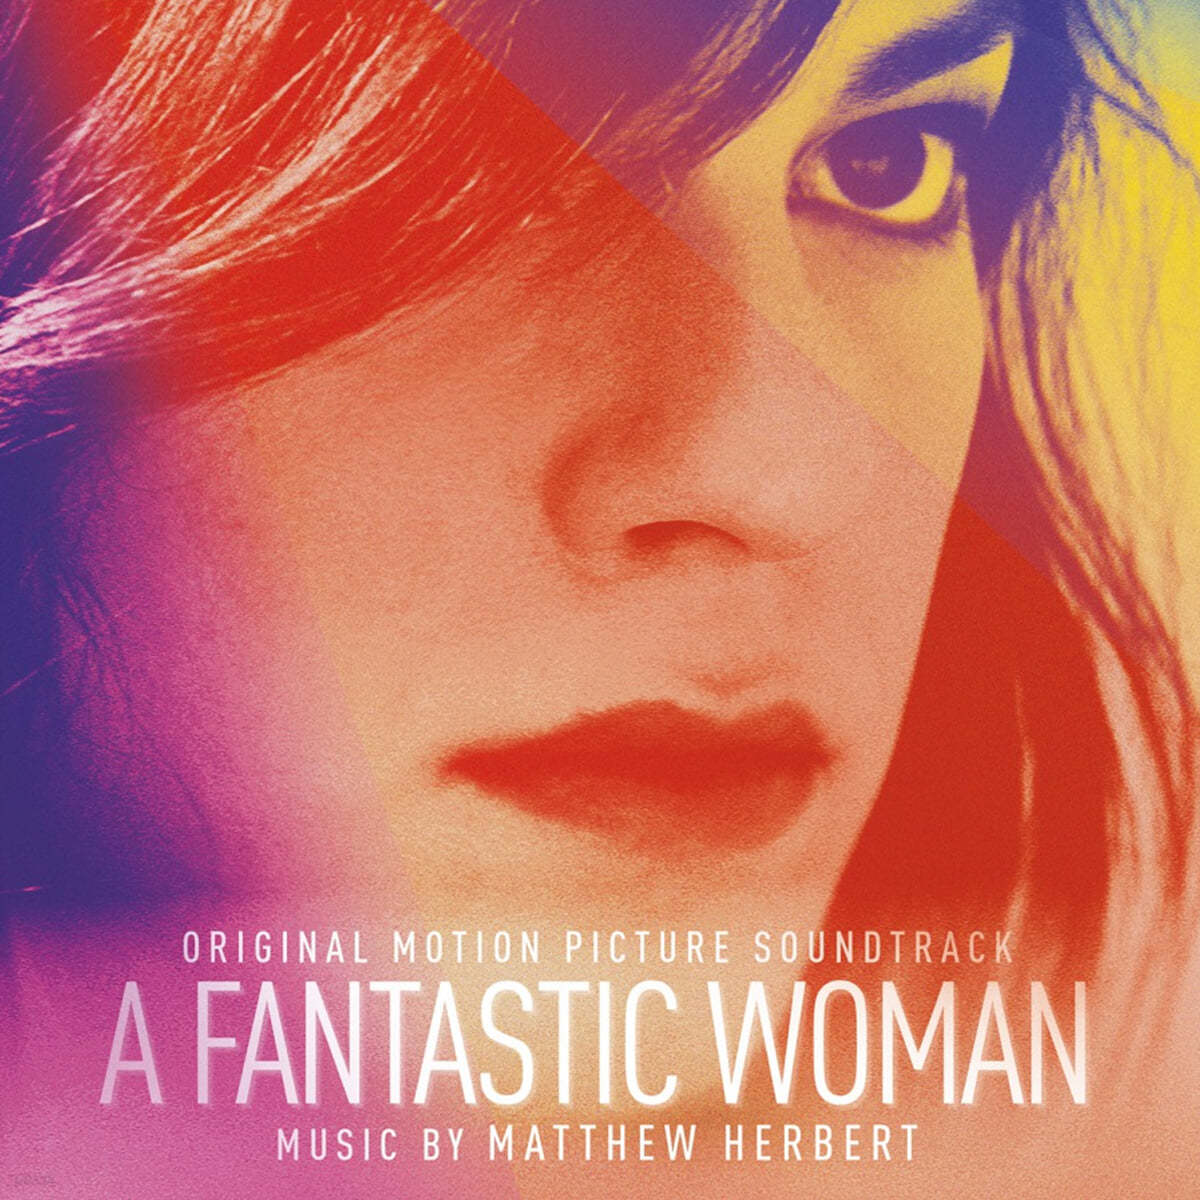 판타스틱 우먼 영화음악 (A Fantastic Woman OST by Matthew Herbert) [투명 핑크 컬러 2LP] 